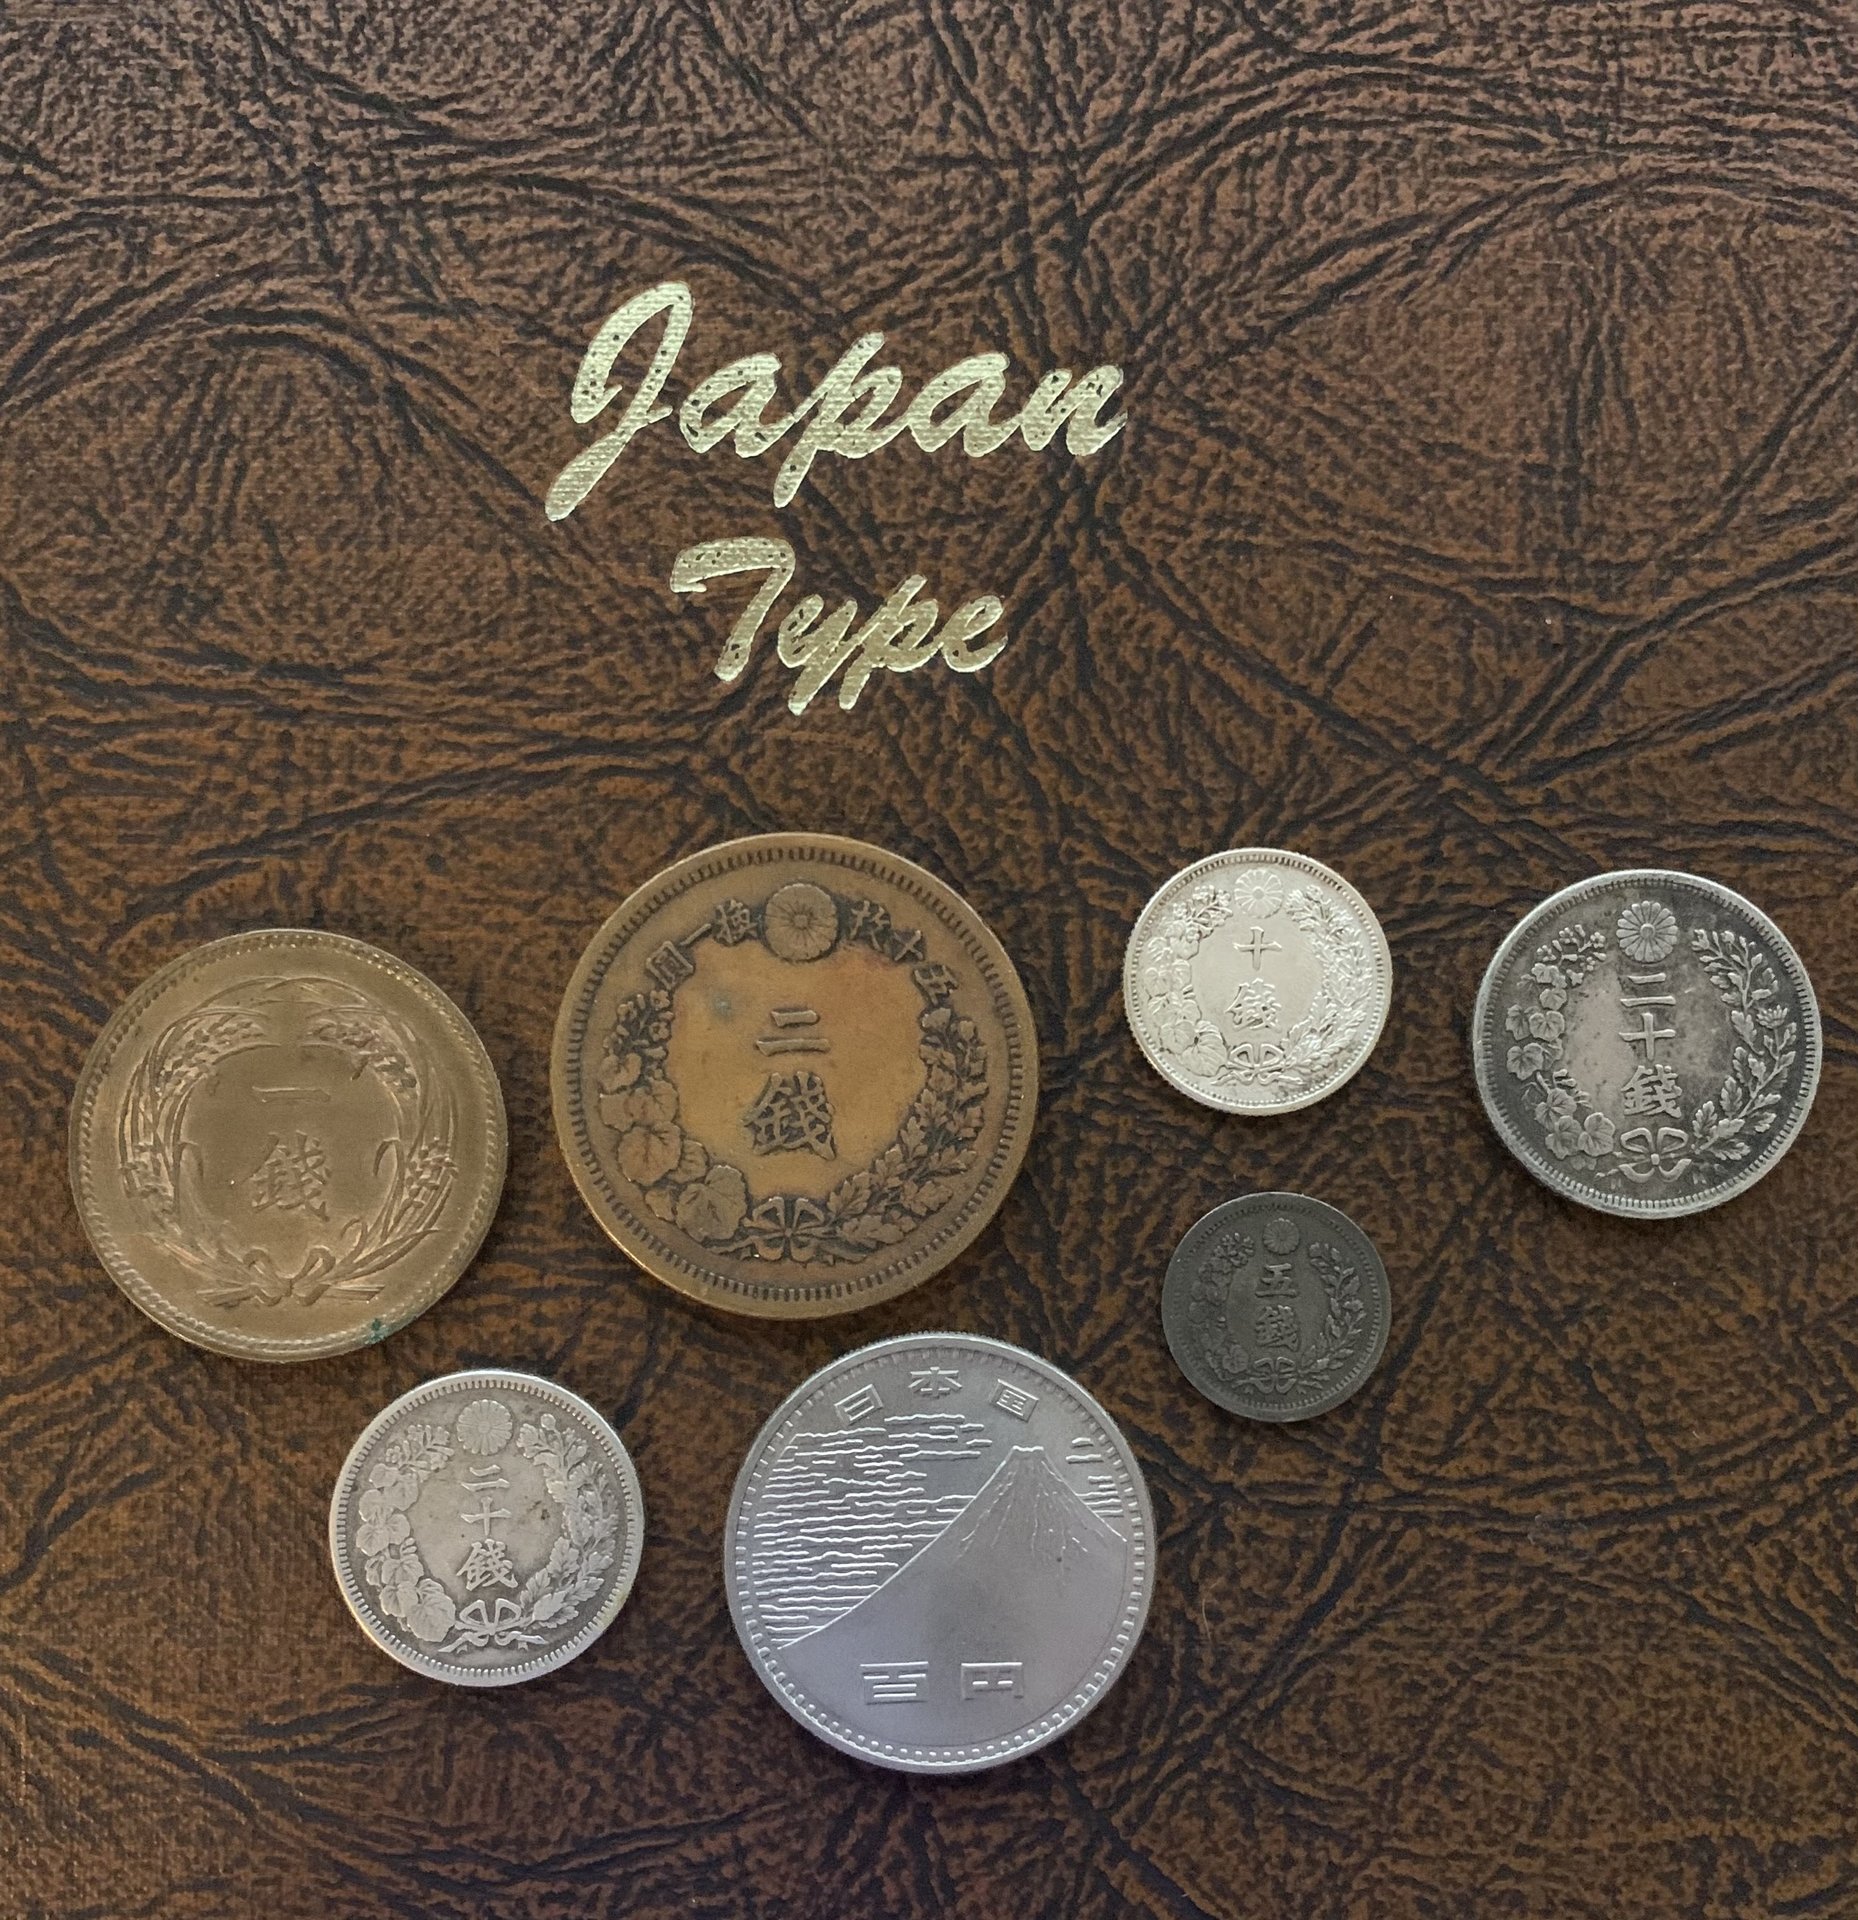 Japan Type 121420 Reverse.jpg